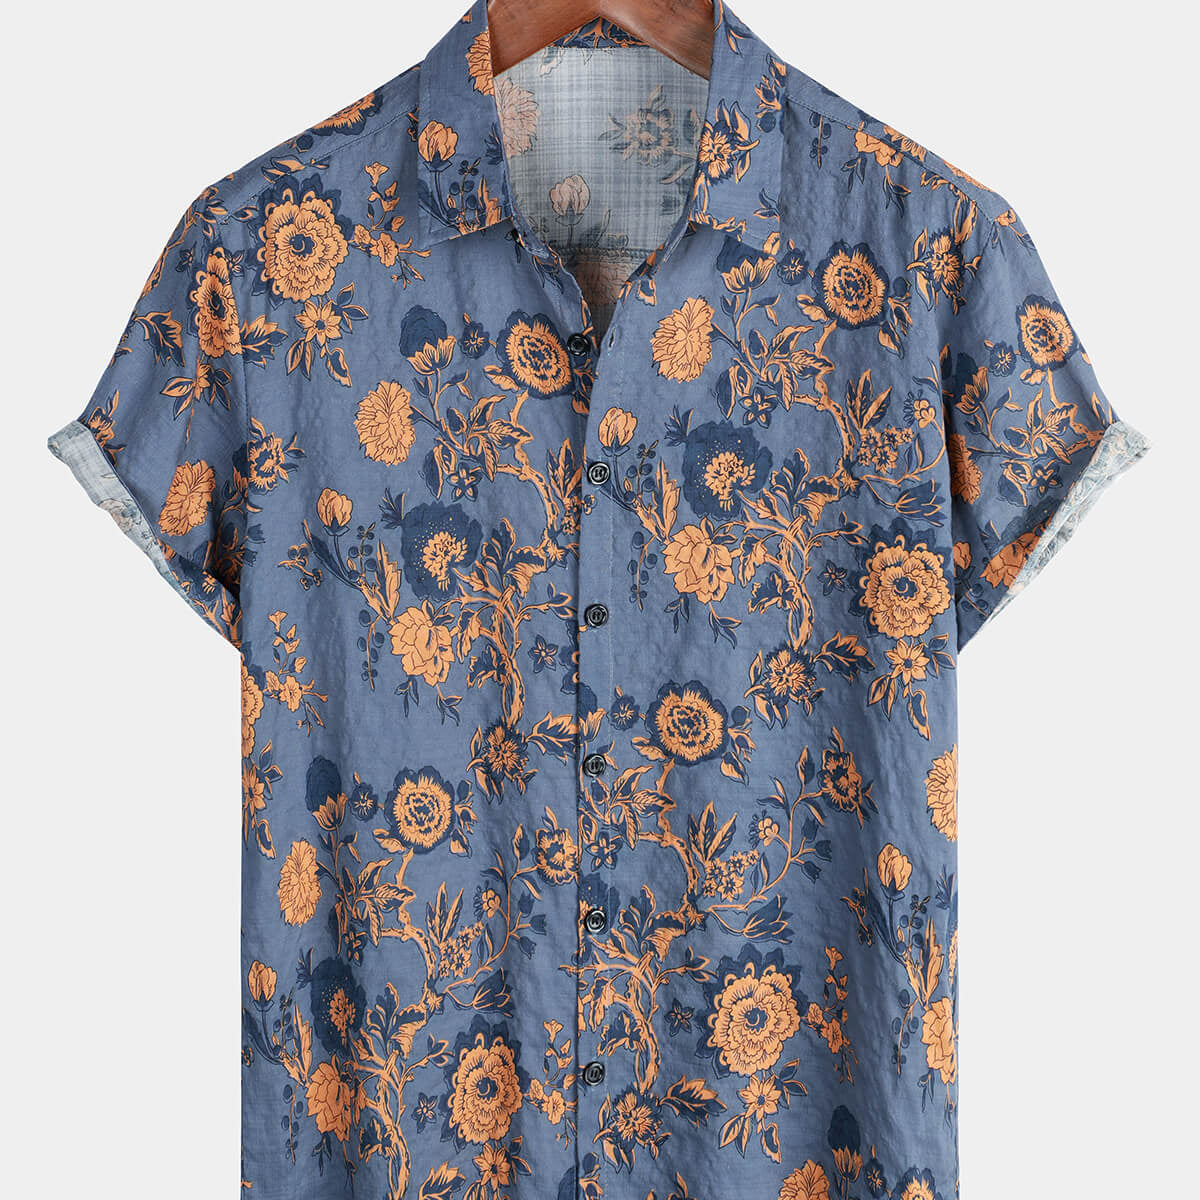 Men's Blue Floral Summer Cotton Hawaiian Button Up Shirt